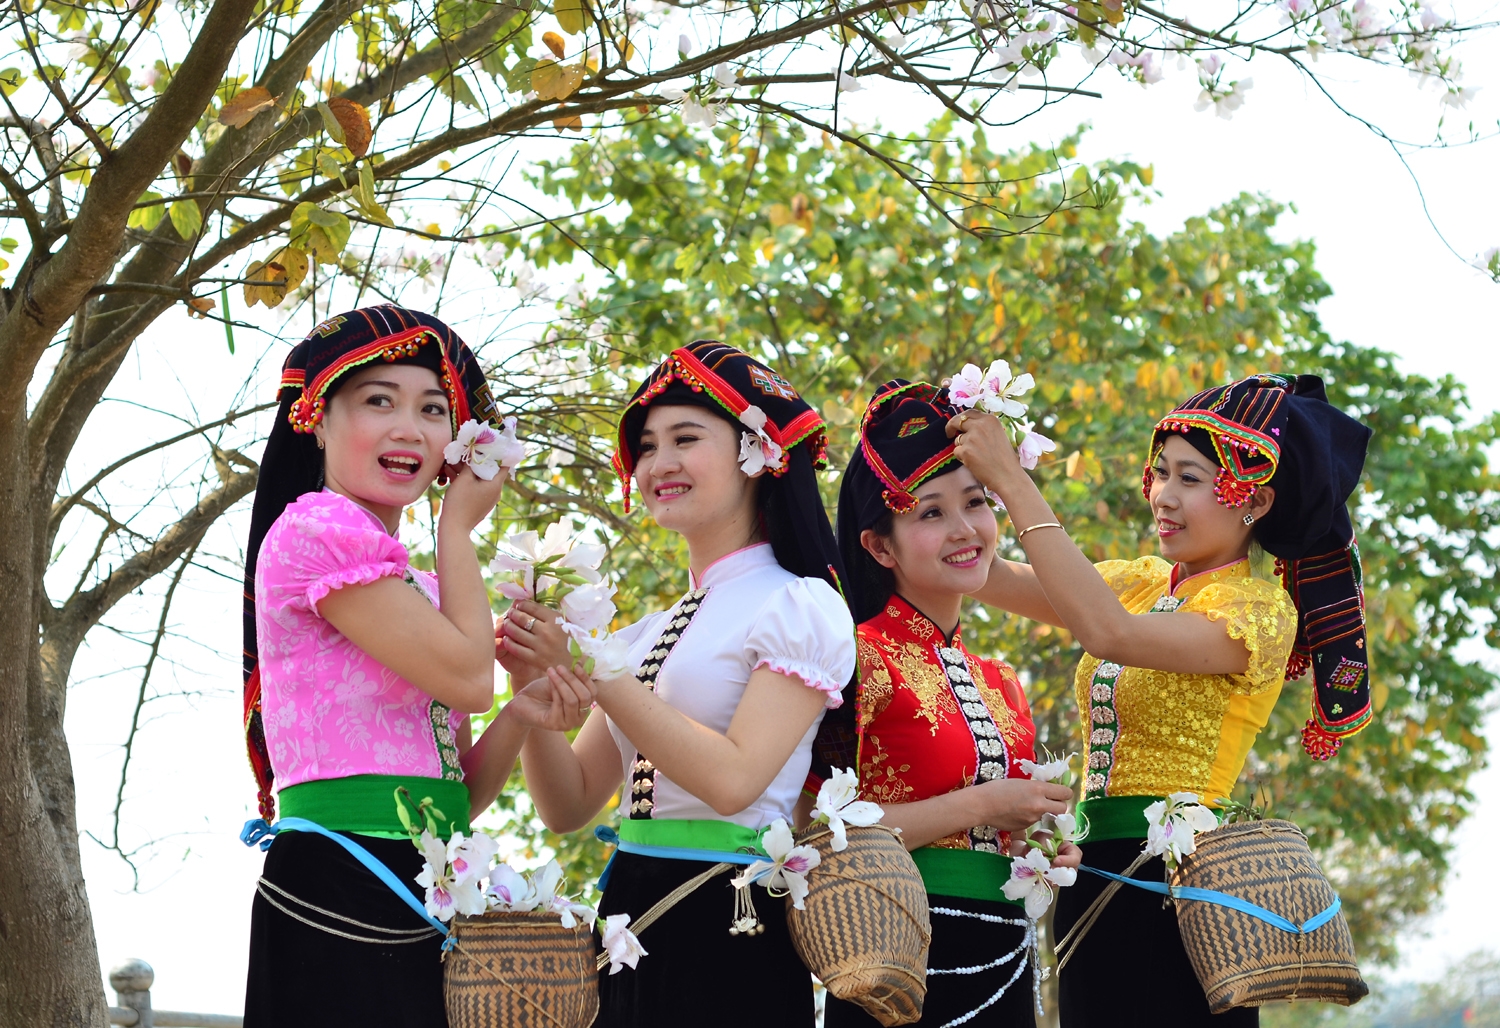 Nghề dệt may sản xuất các trang phục truyền thống của dân tộc Thái tại Điện Biên hiện nay là một trong những vấn đề được Hội thảo quan tâm. 